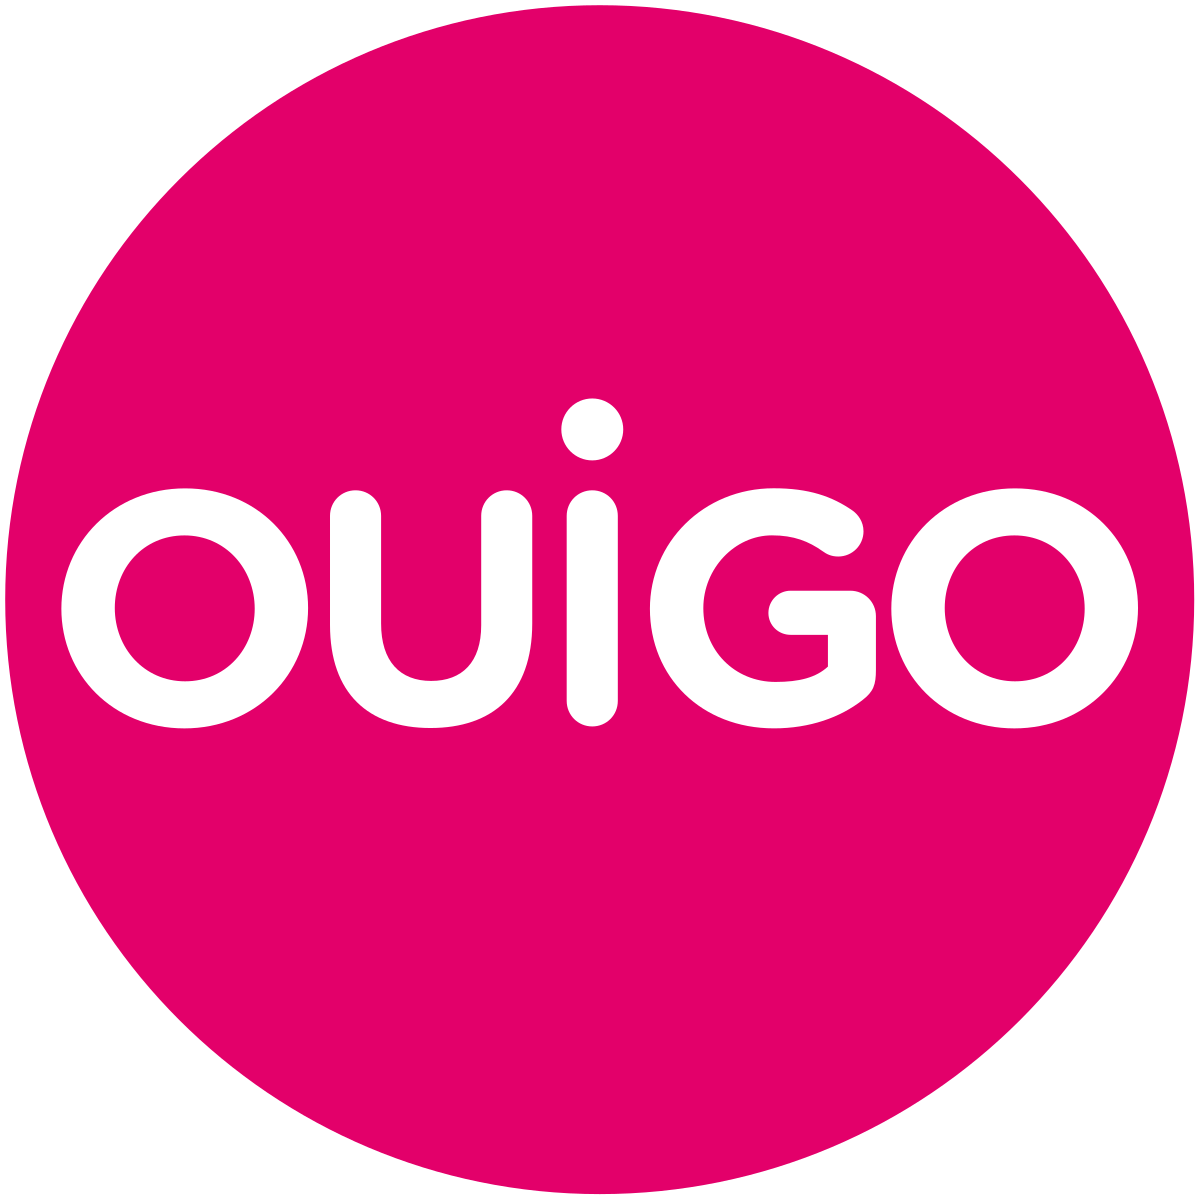 www.ouigo.com